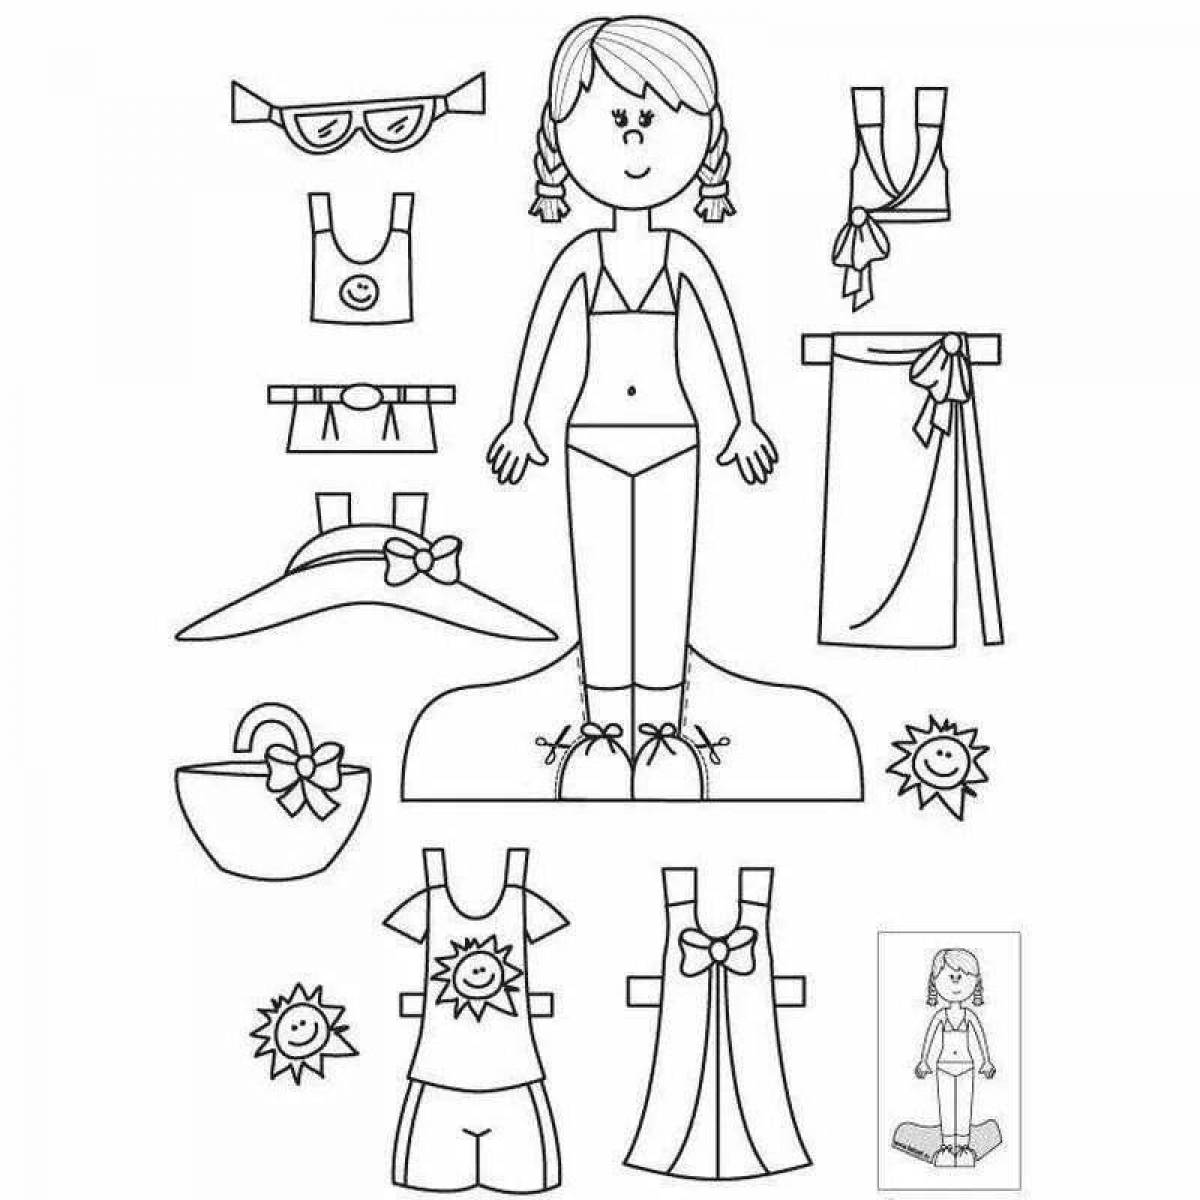 Креативная бумажная кукла с одеждой, которую нужно вырезать